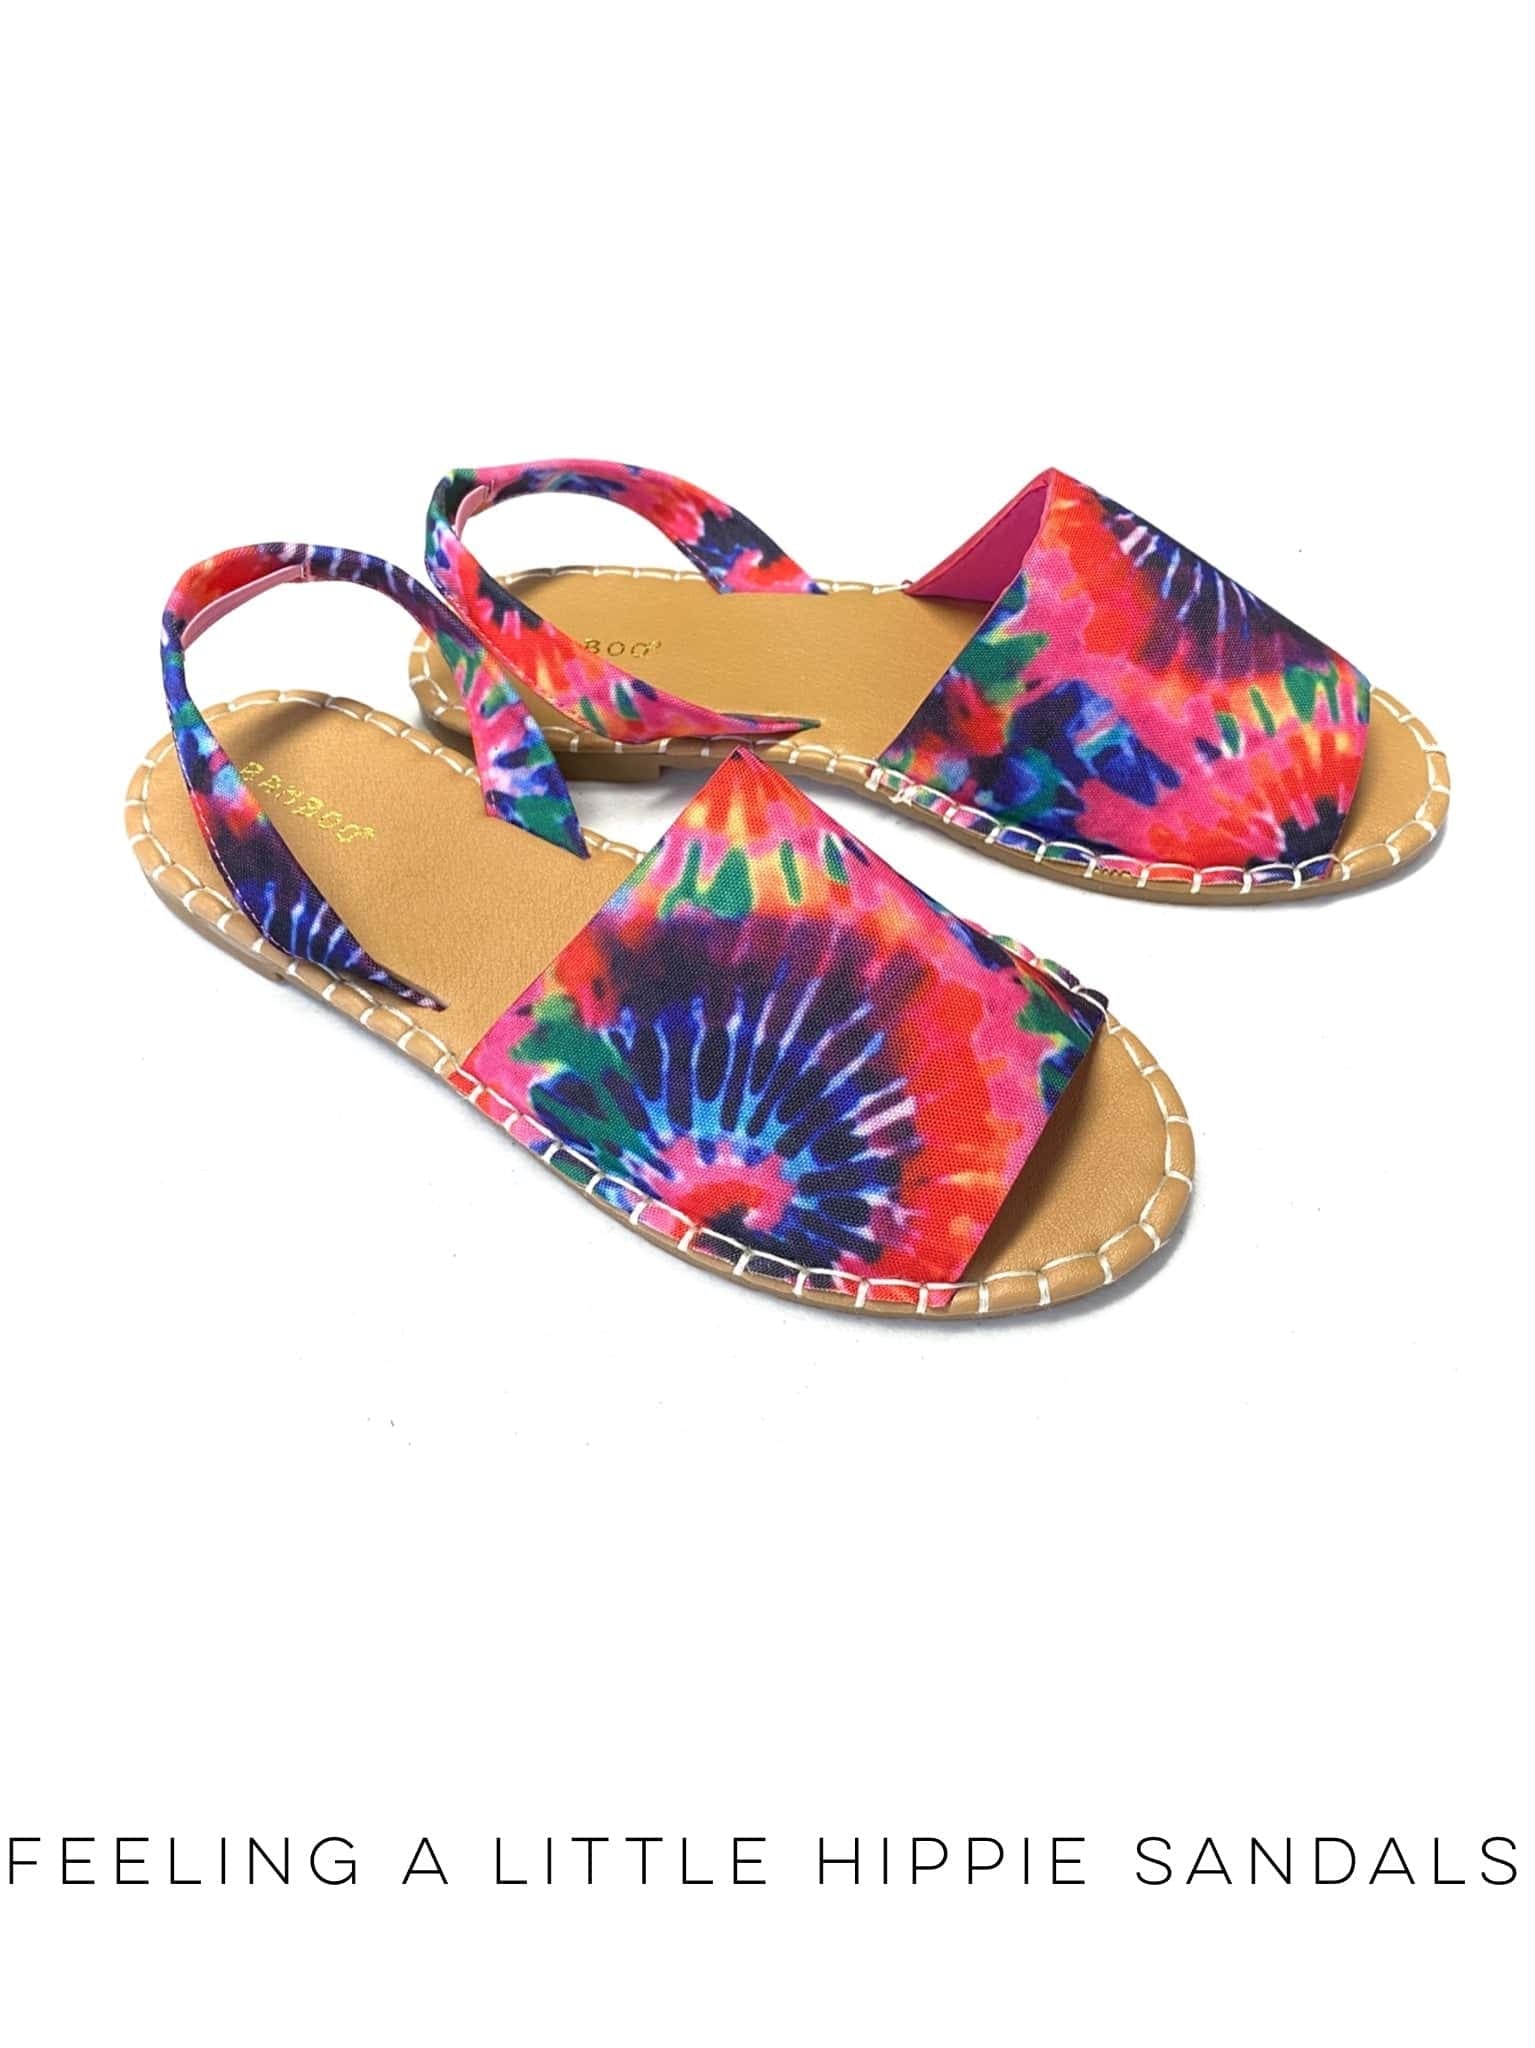 Feeling a Little Hippie Sandals-Shoe Addict-Stay Foxy Boutique, Florissant, Missouri